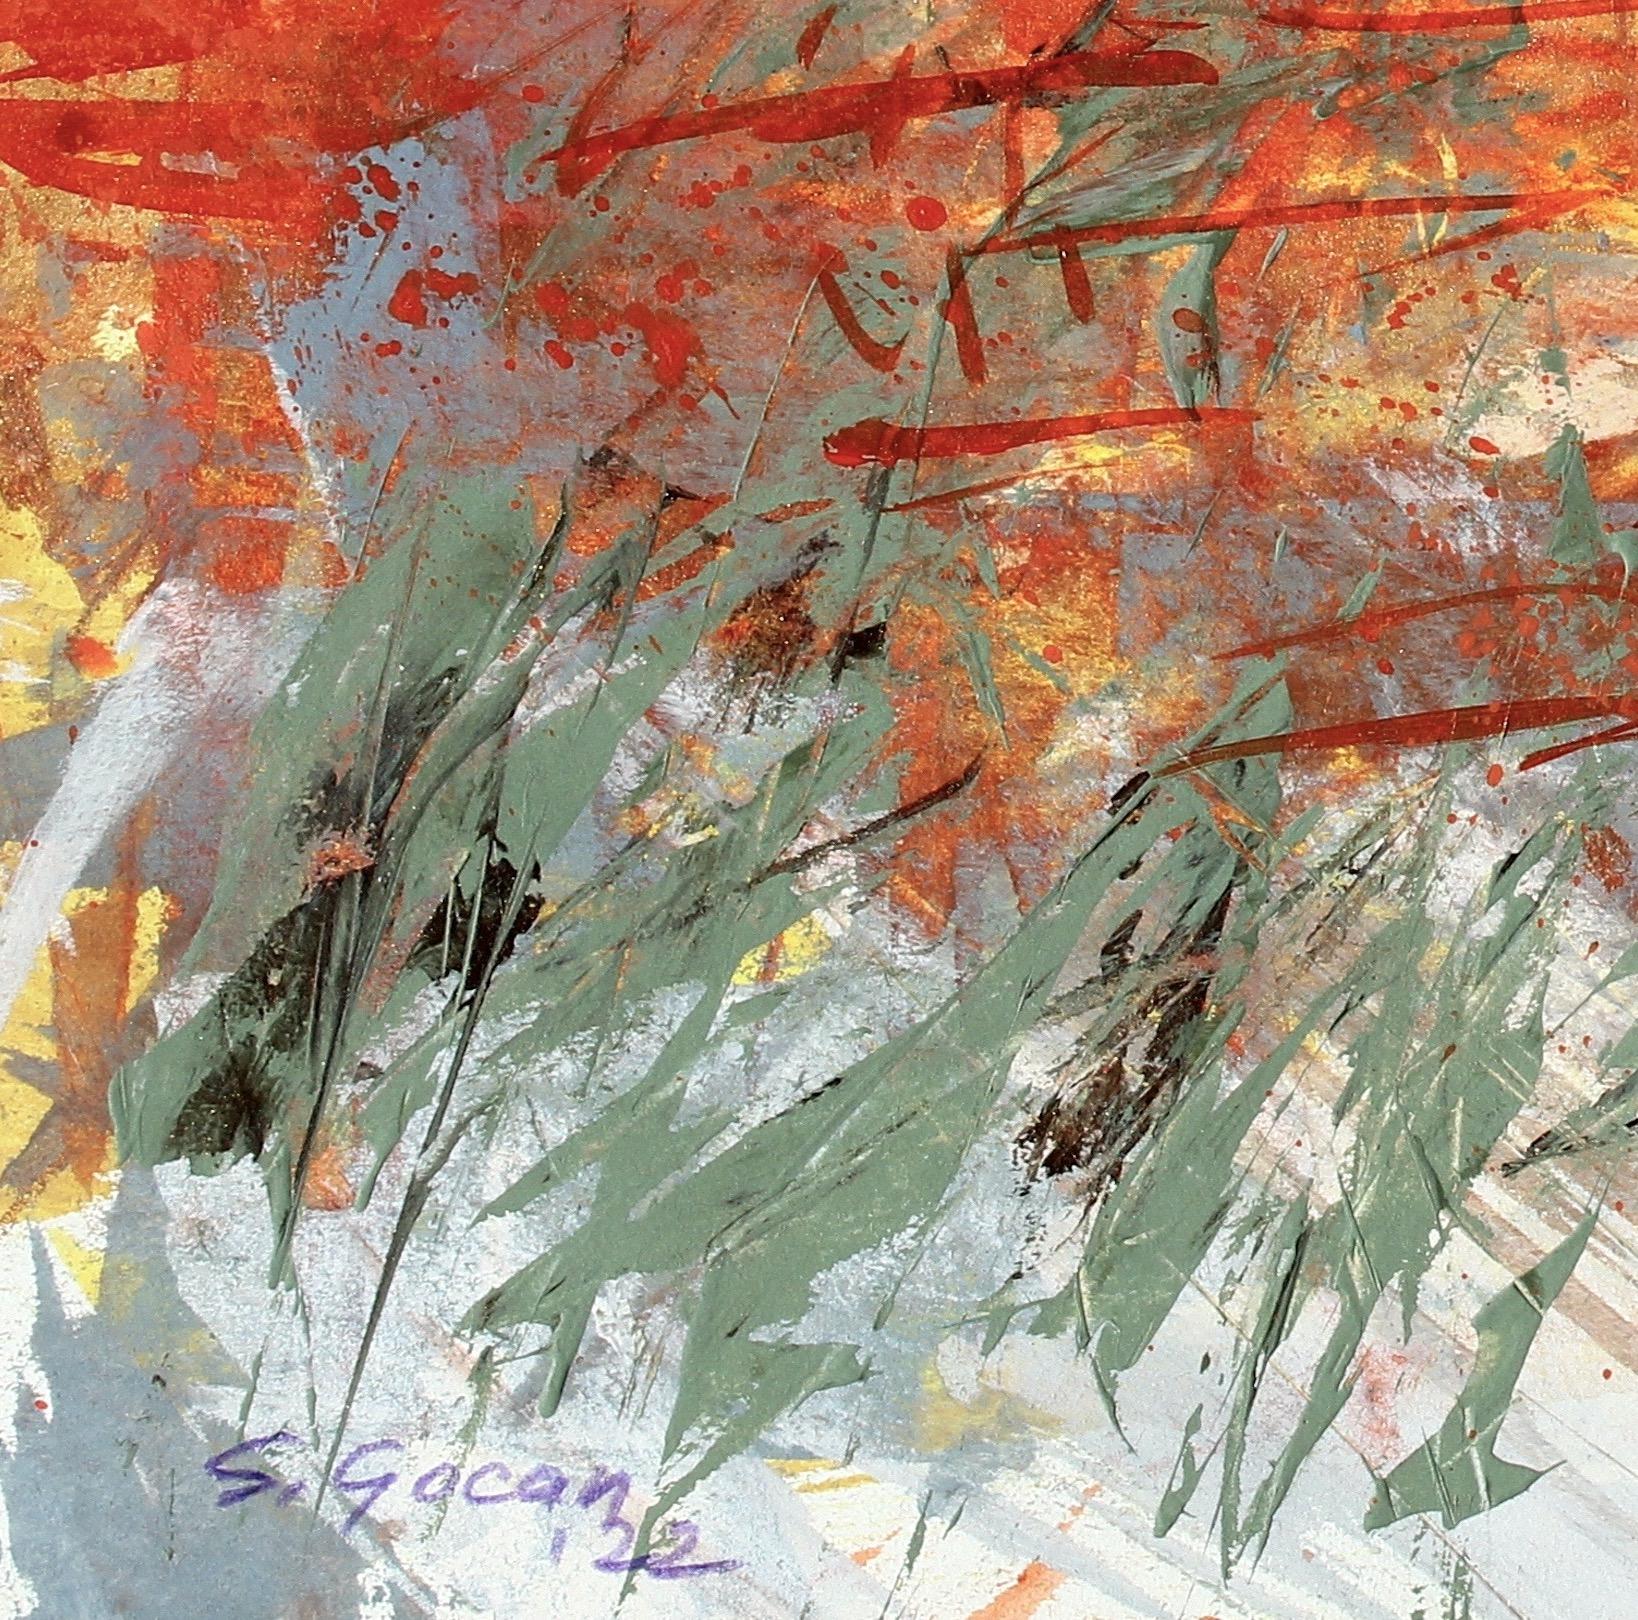 Desertscape #4, peinture originale de paysage expressionniste abstrait contemporain, 2022
14